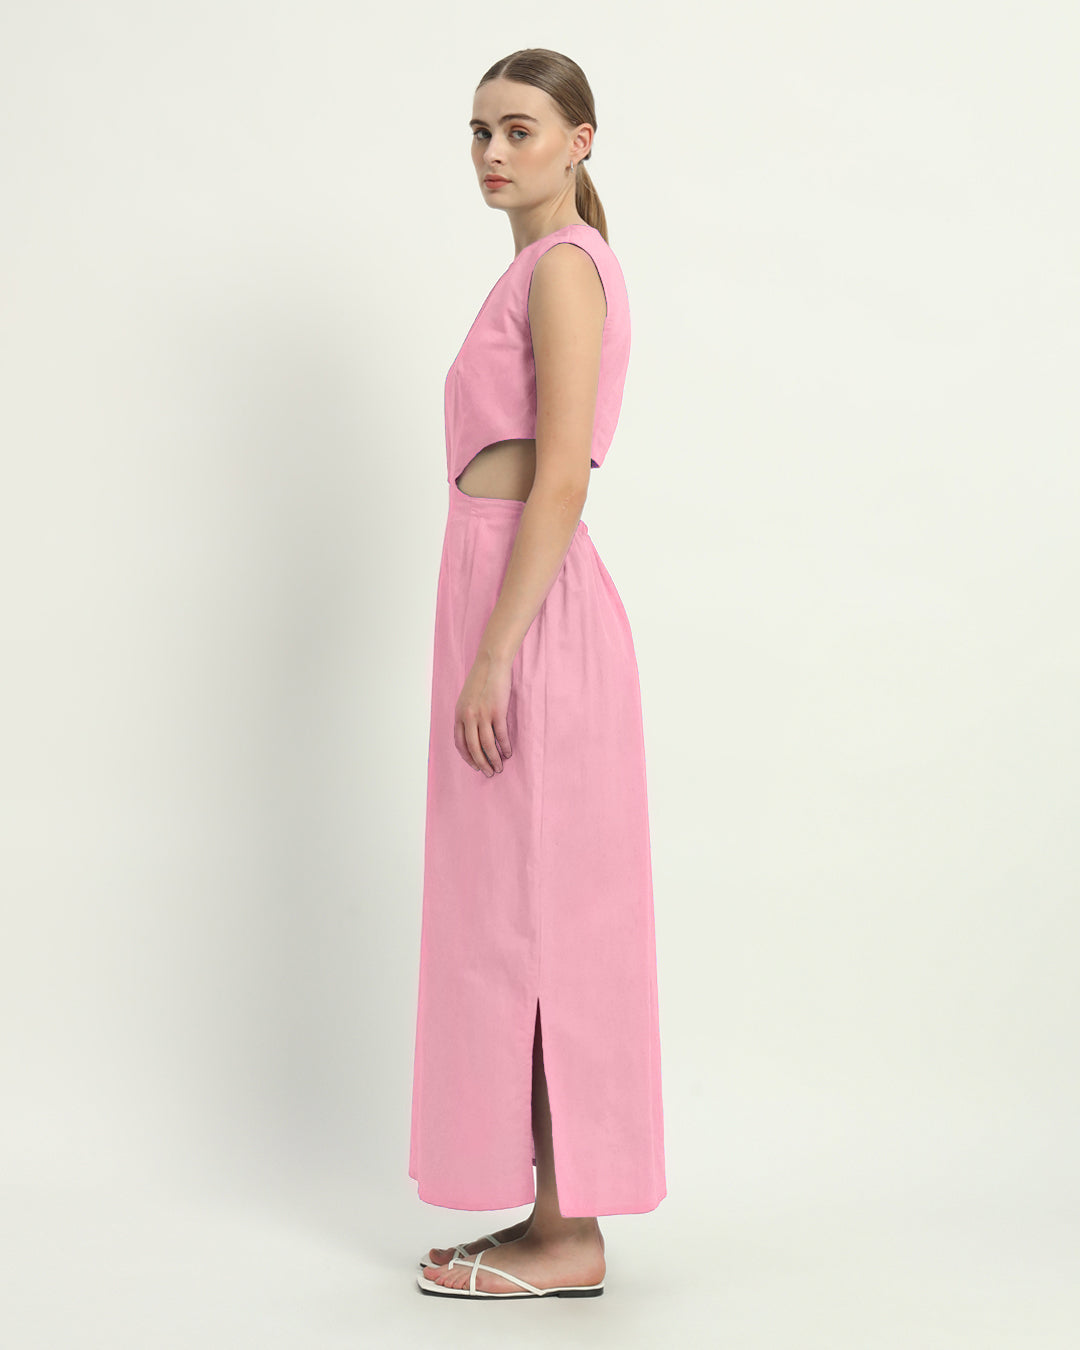 The Livingston Fondant Pink Cotton Dress